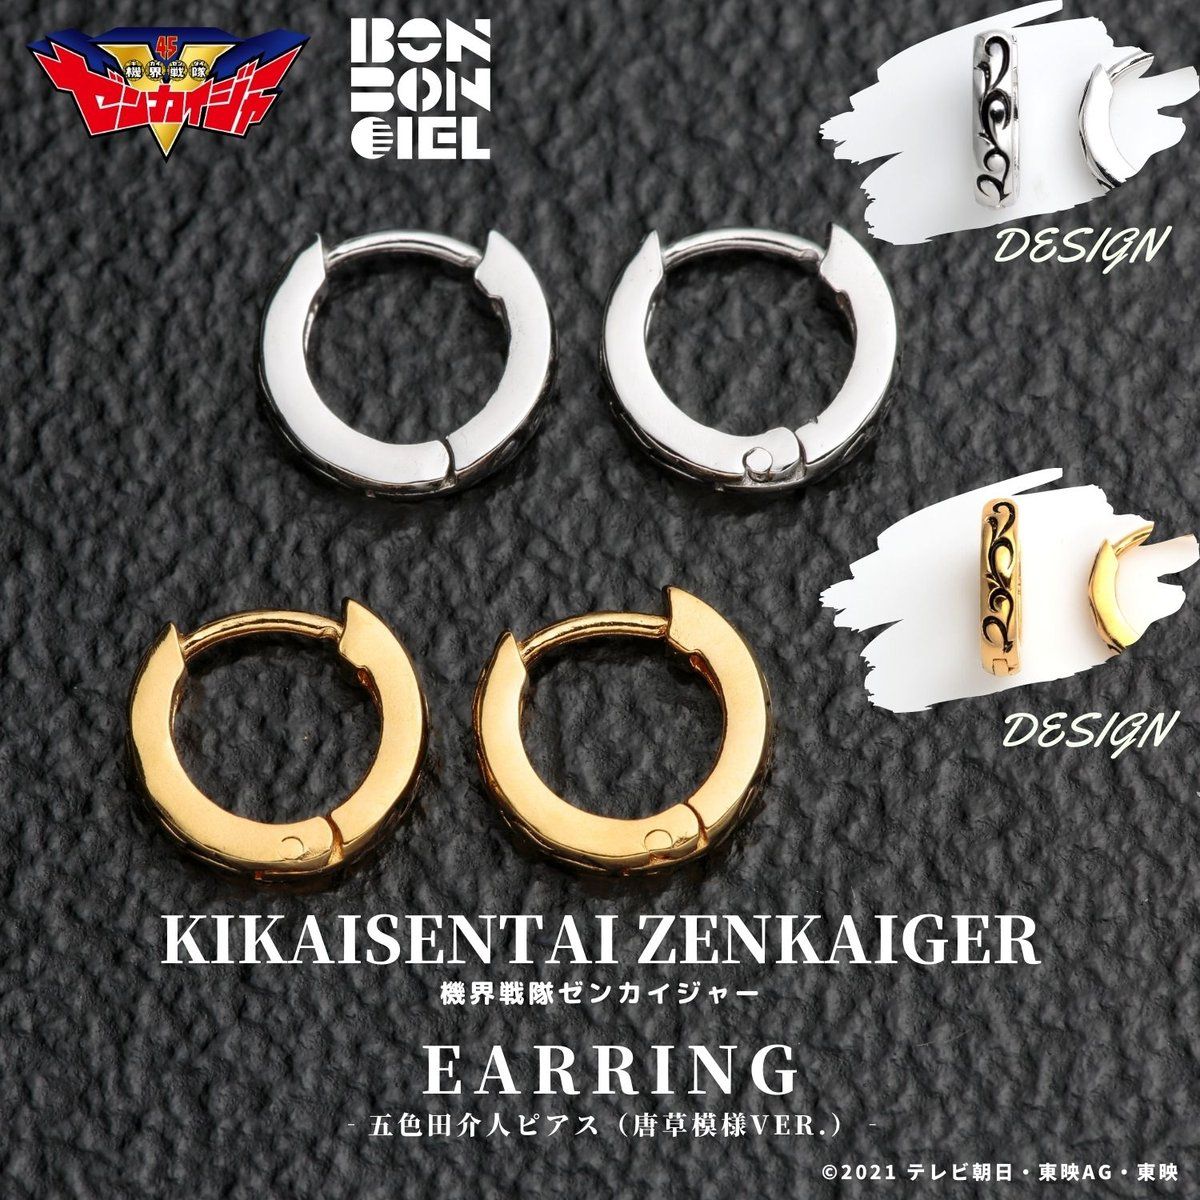 Zenkaiger Earrings